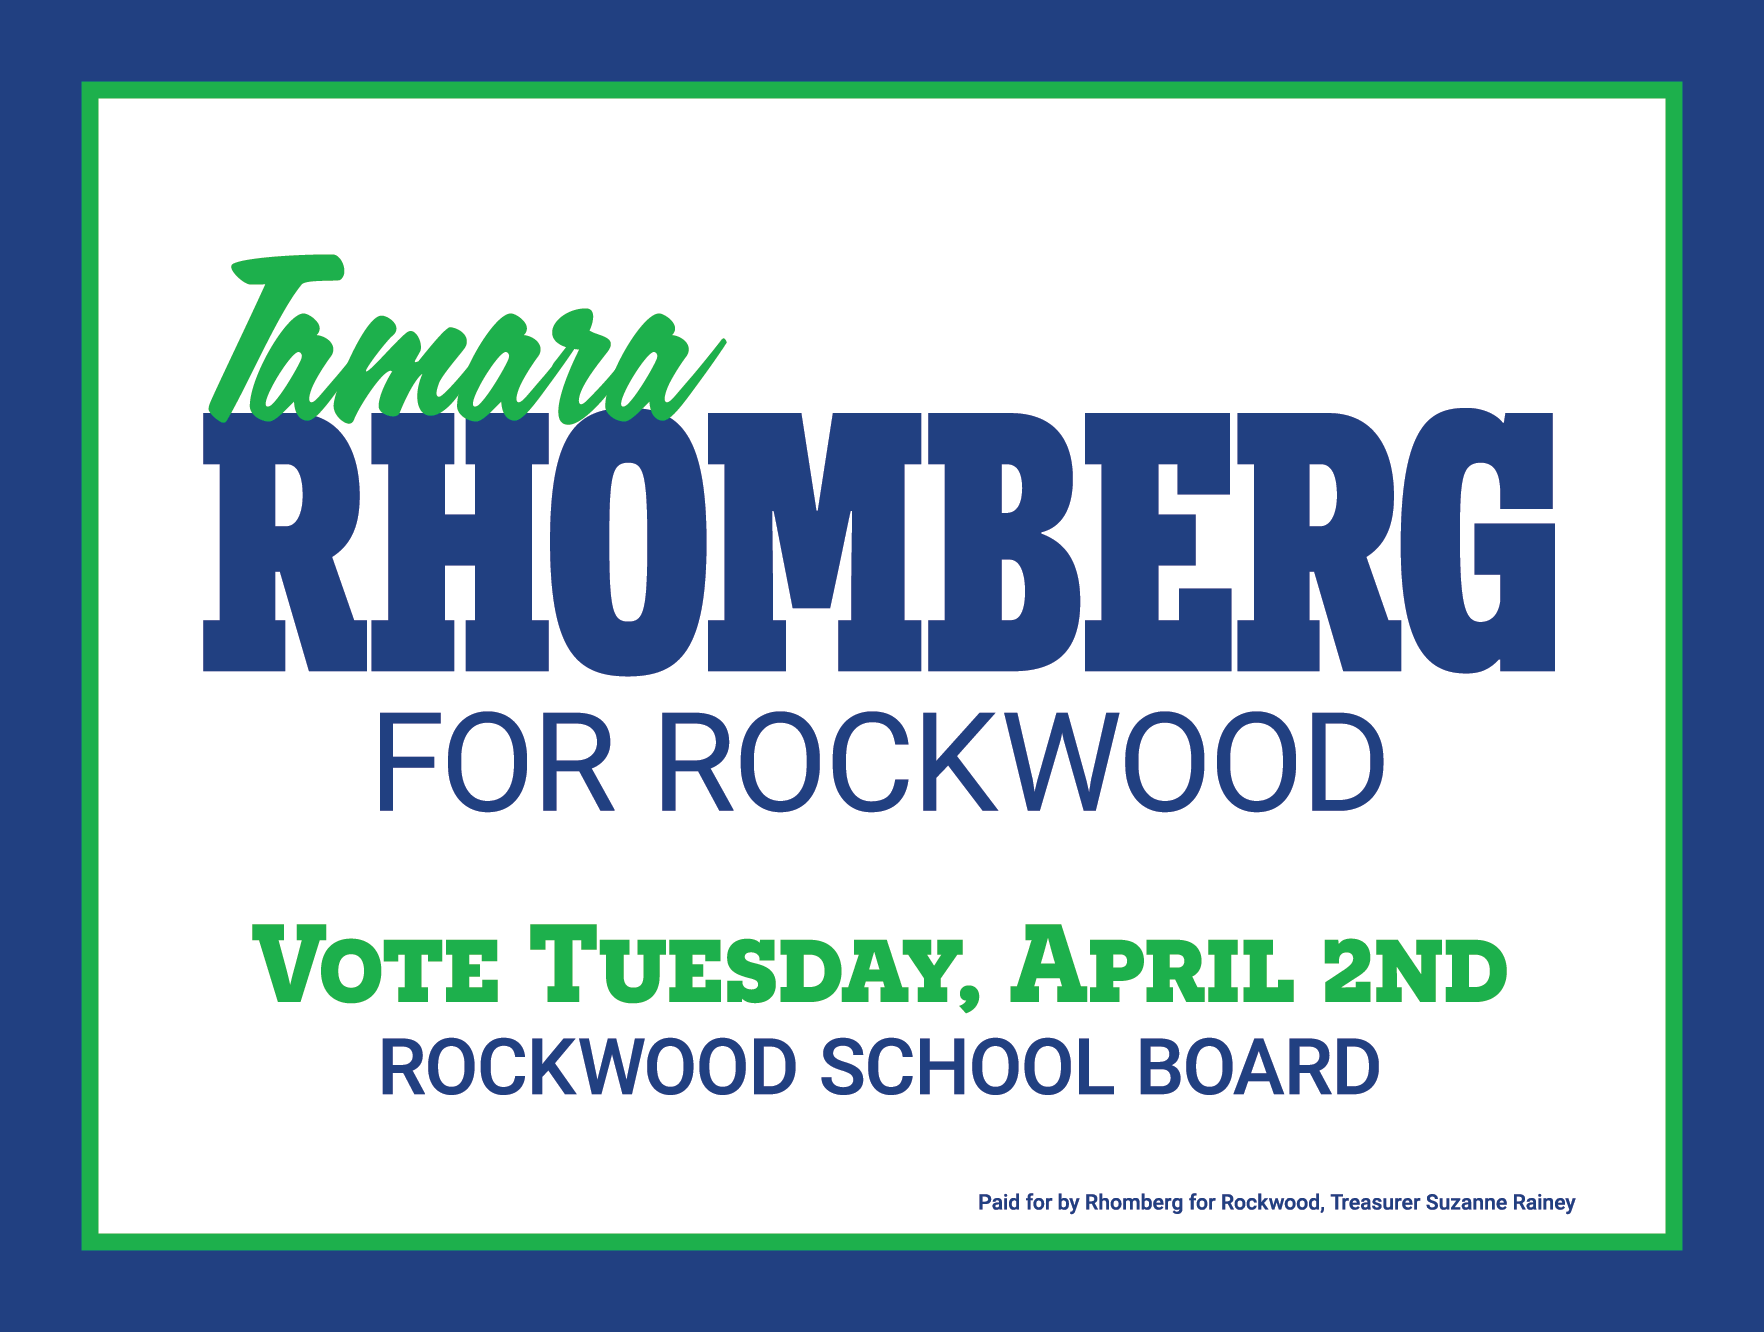 Tamara Rhomberg for Rockwood School Board